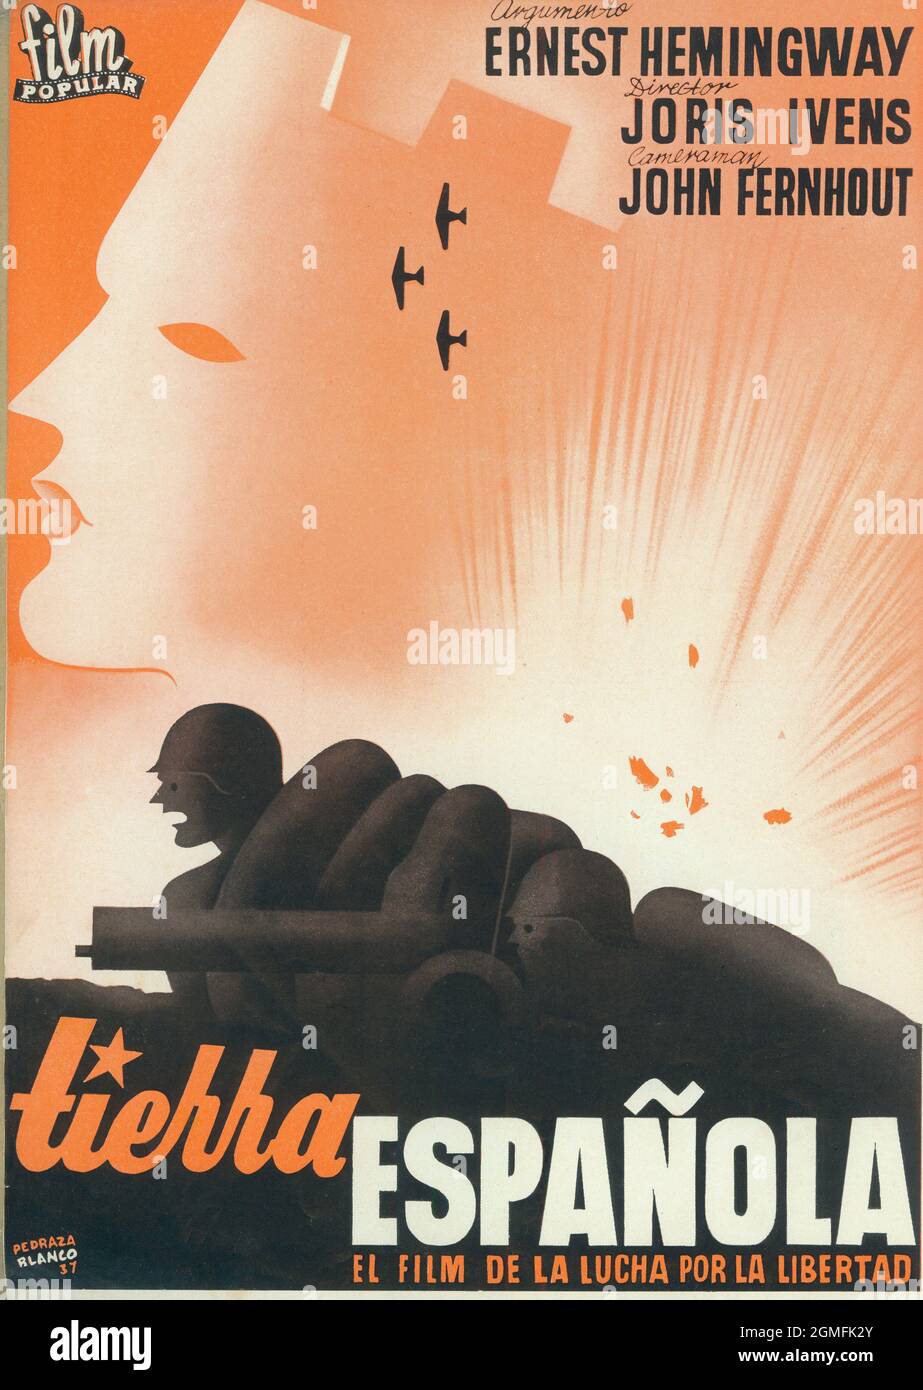 España. Cartel de la película Tierra española, dirigida por Joris Ivens y argumento de Ernest Hemingway. Año 1938. Stock Photo